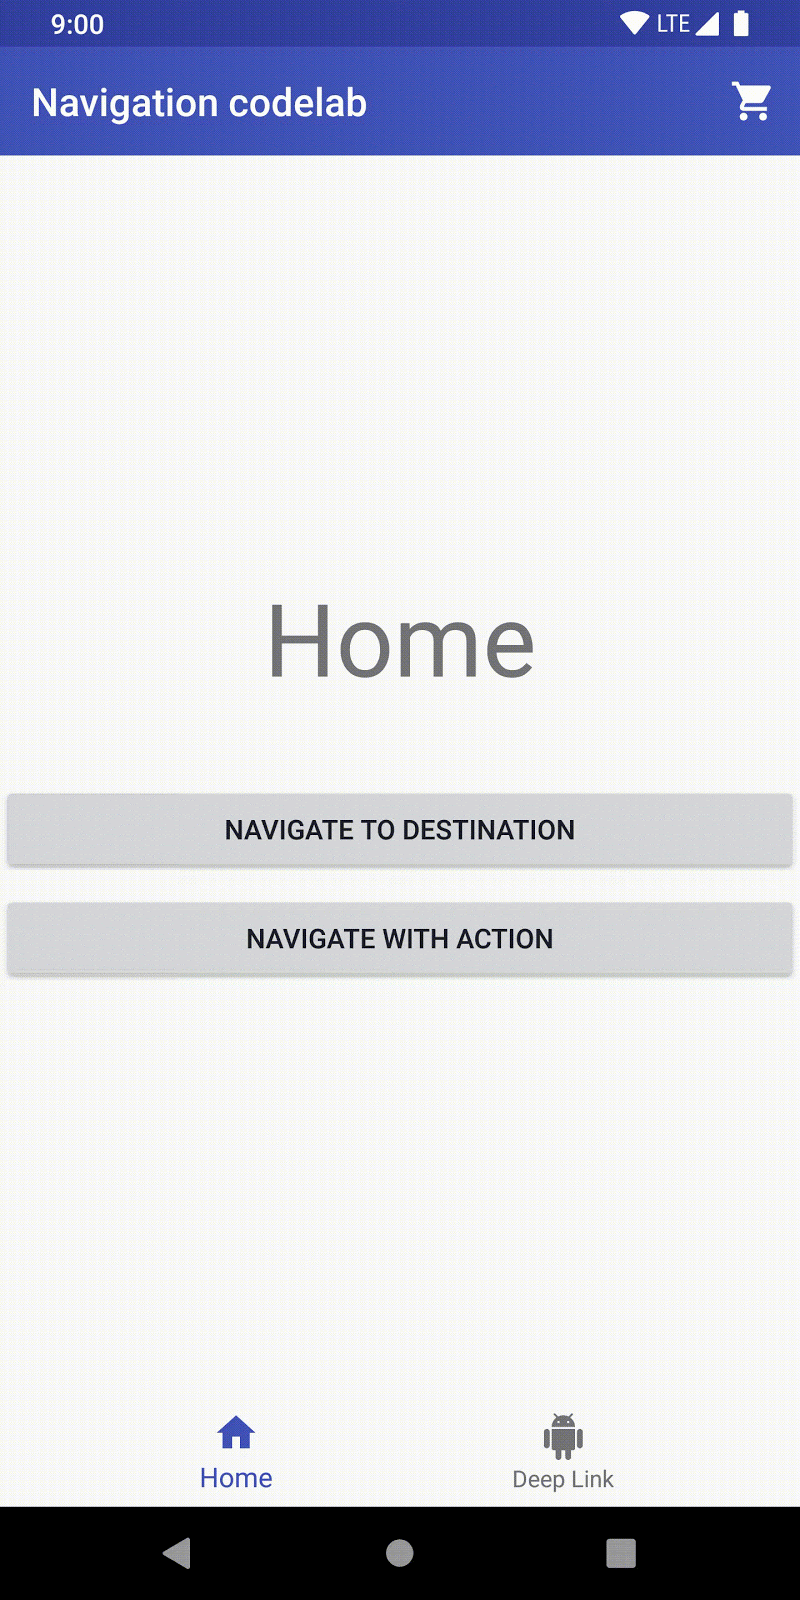 Da página inicial, o usuário clica em "Navigate to destination" e vai para a primeira etapa.